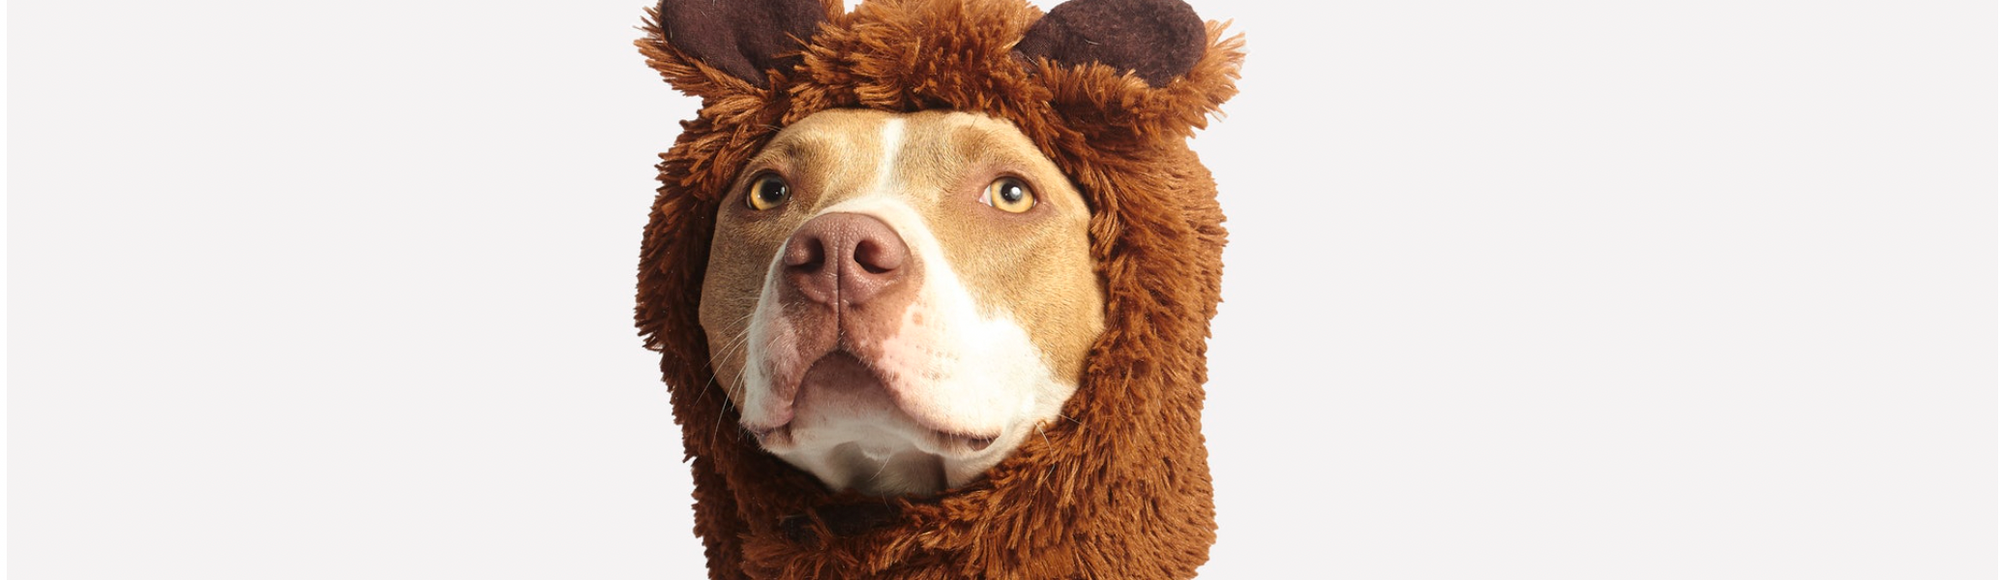 Pit bull wearing a teddy bear hat